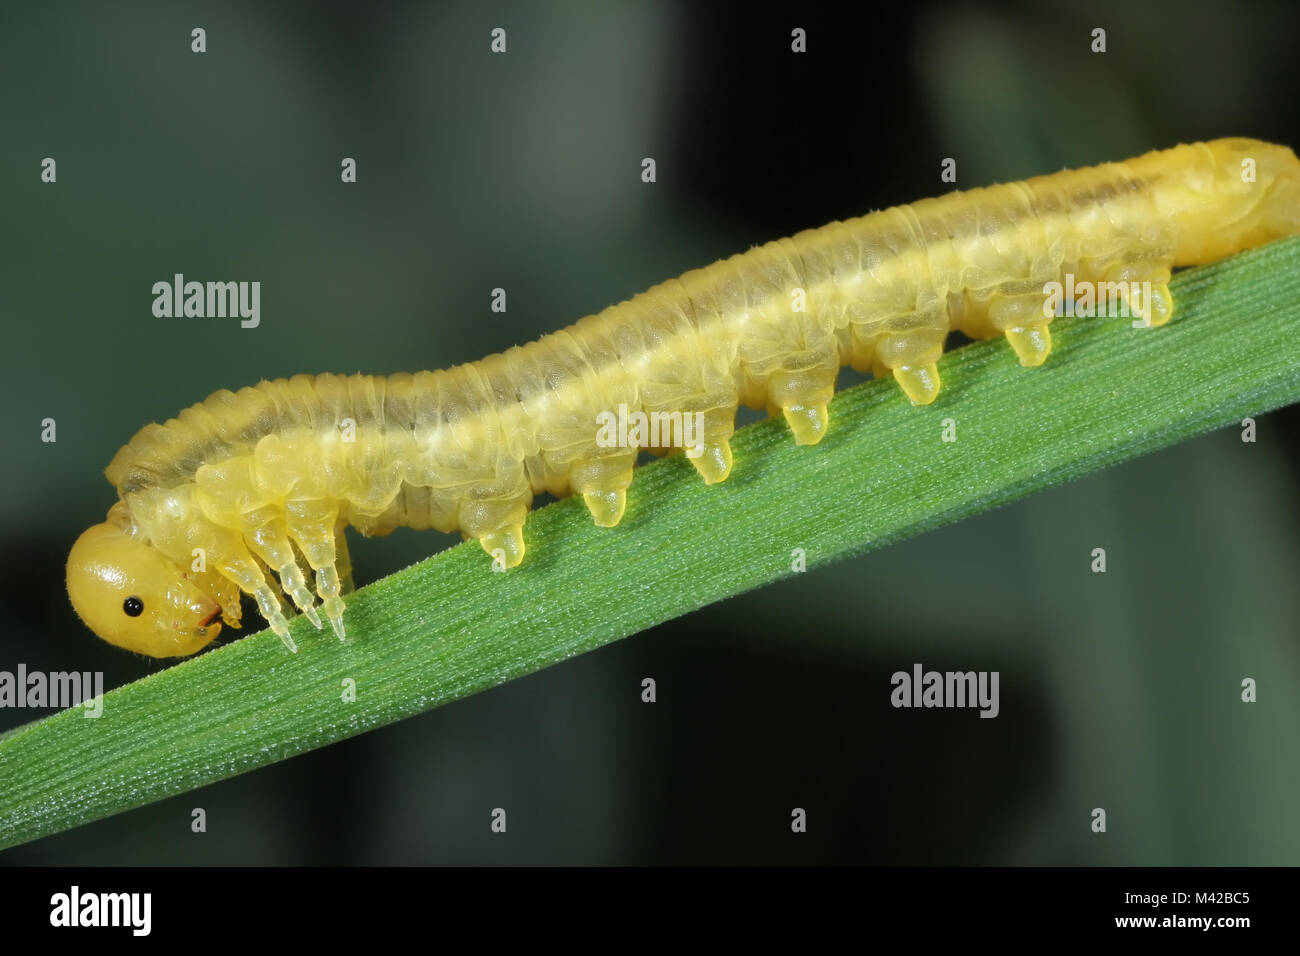 Le larve di imenotteri formano la famiglia Tenthredinidae sui cereali. Foto Stock